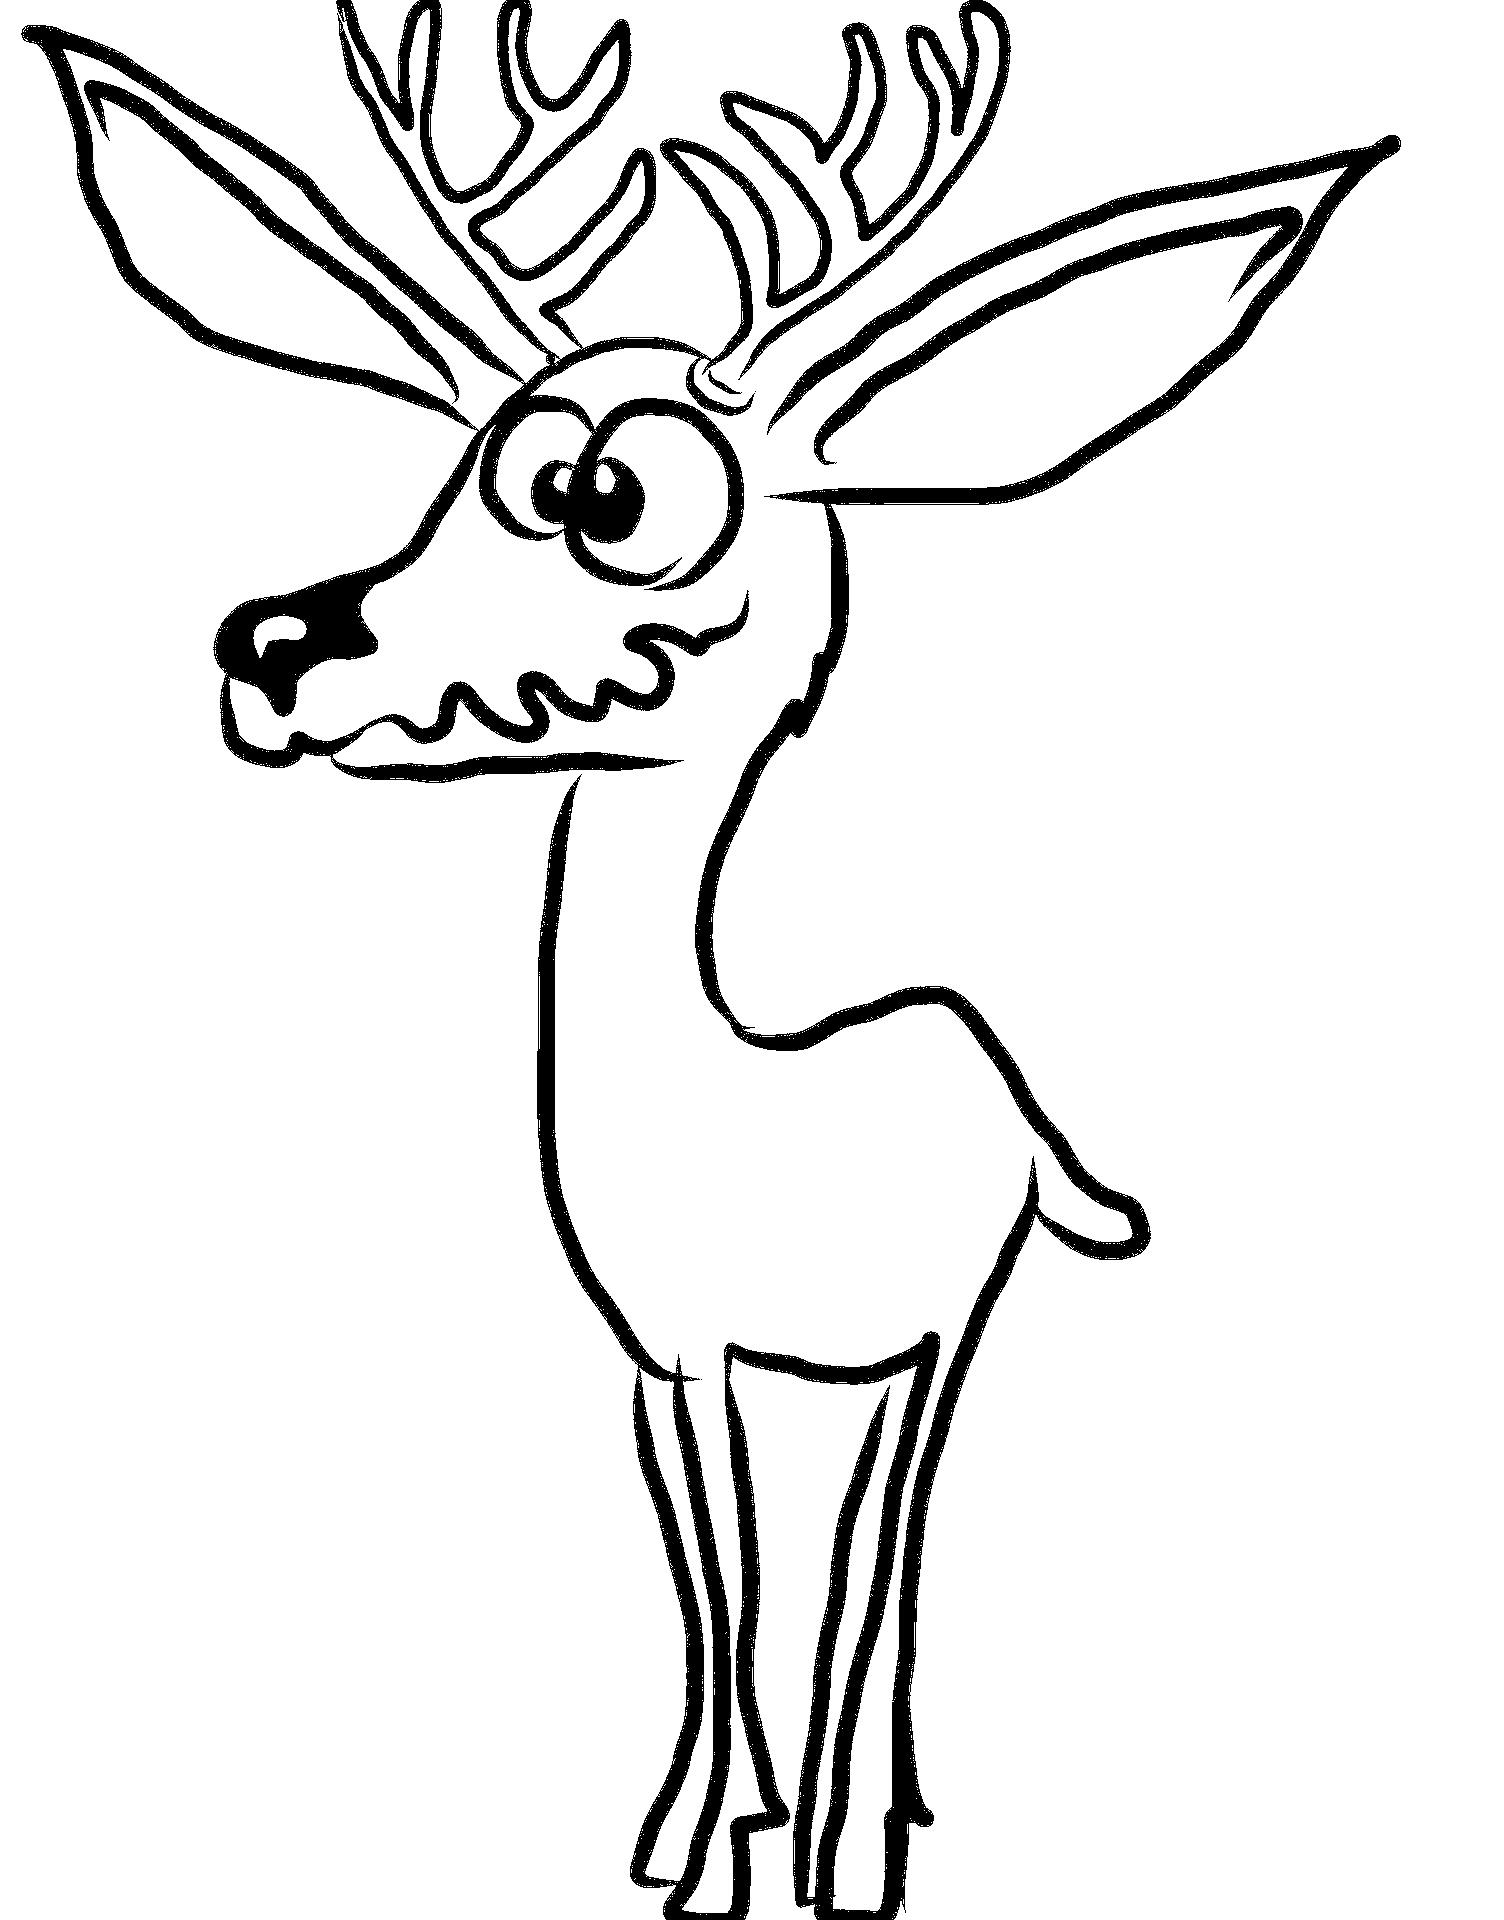 Disegno da colorare di cervo umoristico pauroso